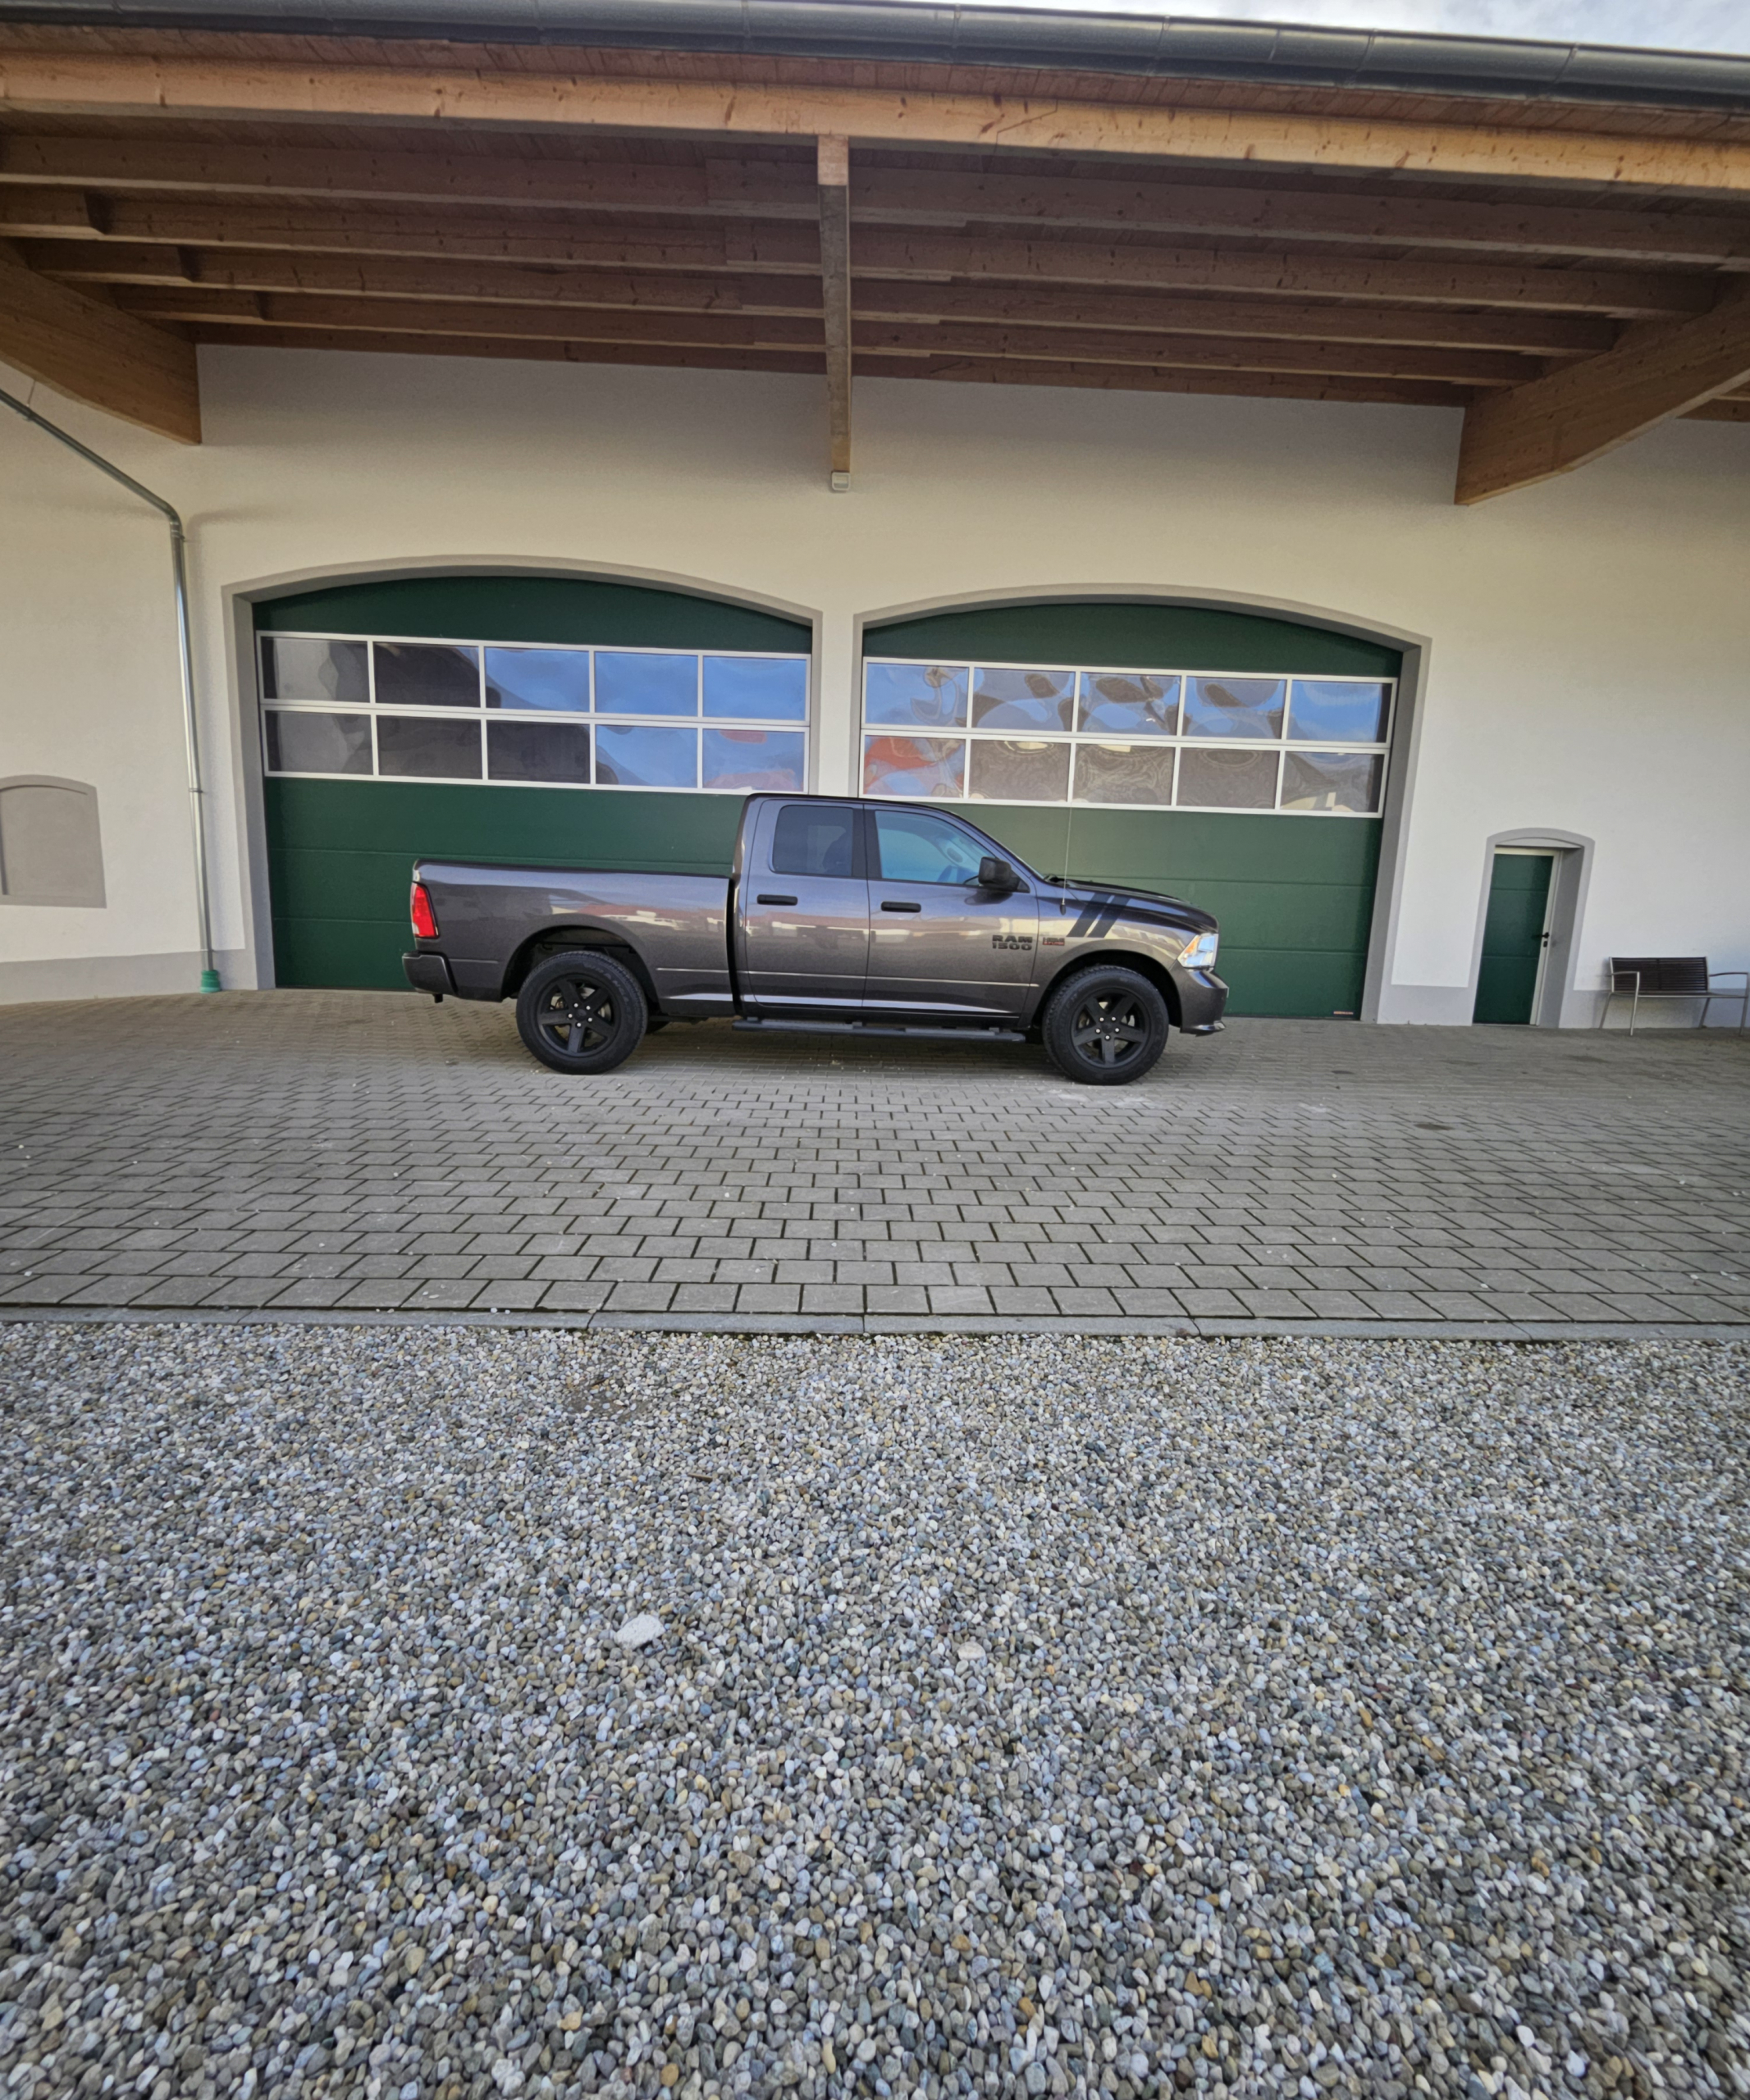 2015 Dodge Ram 1500 v8 à vendre à Lille